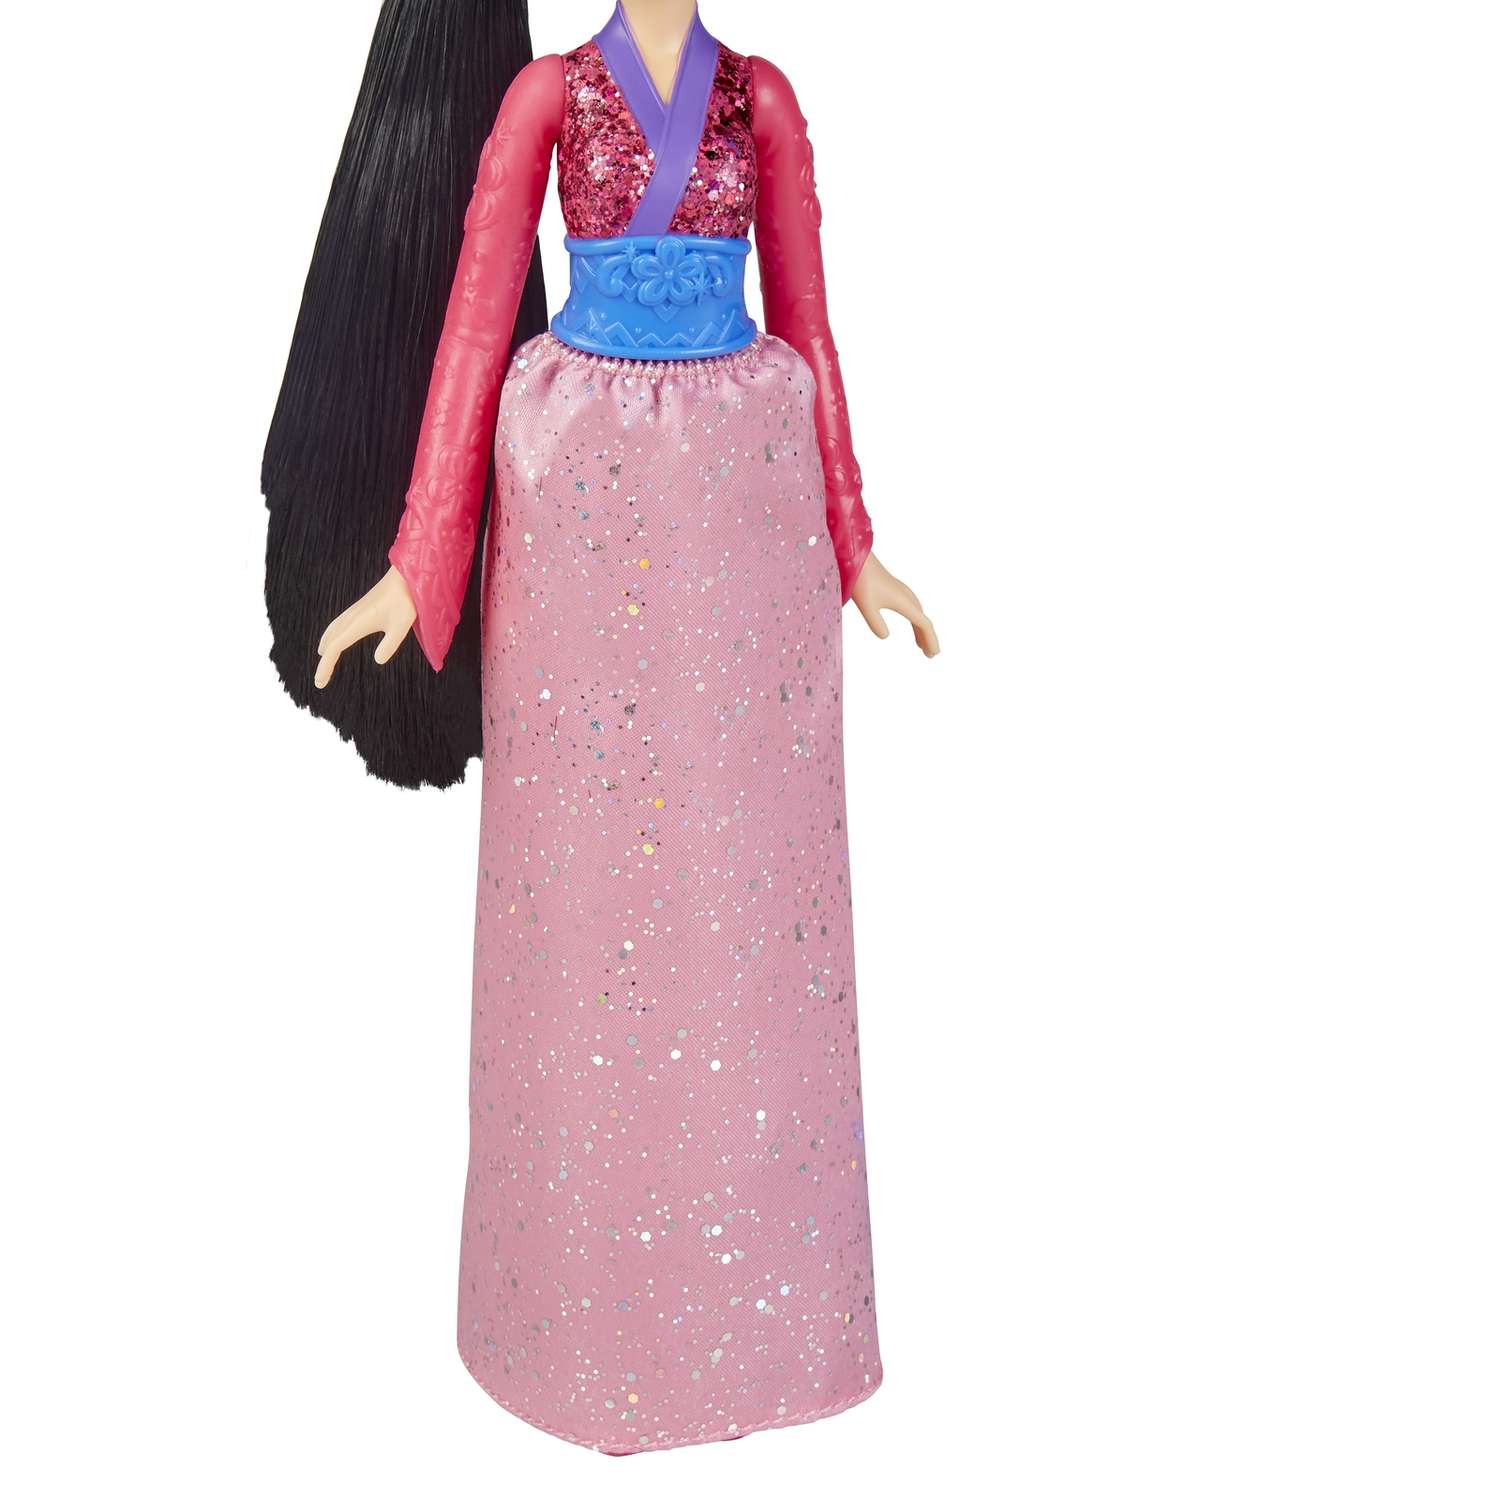 Кукла Disney Princess Hasbro C Мулан E4167EU4 E4022EU4 - фото 10